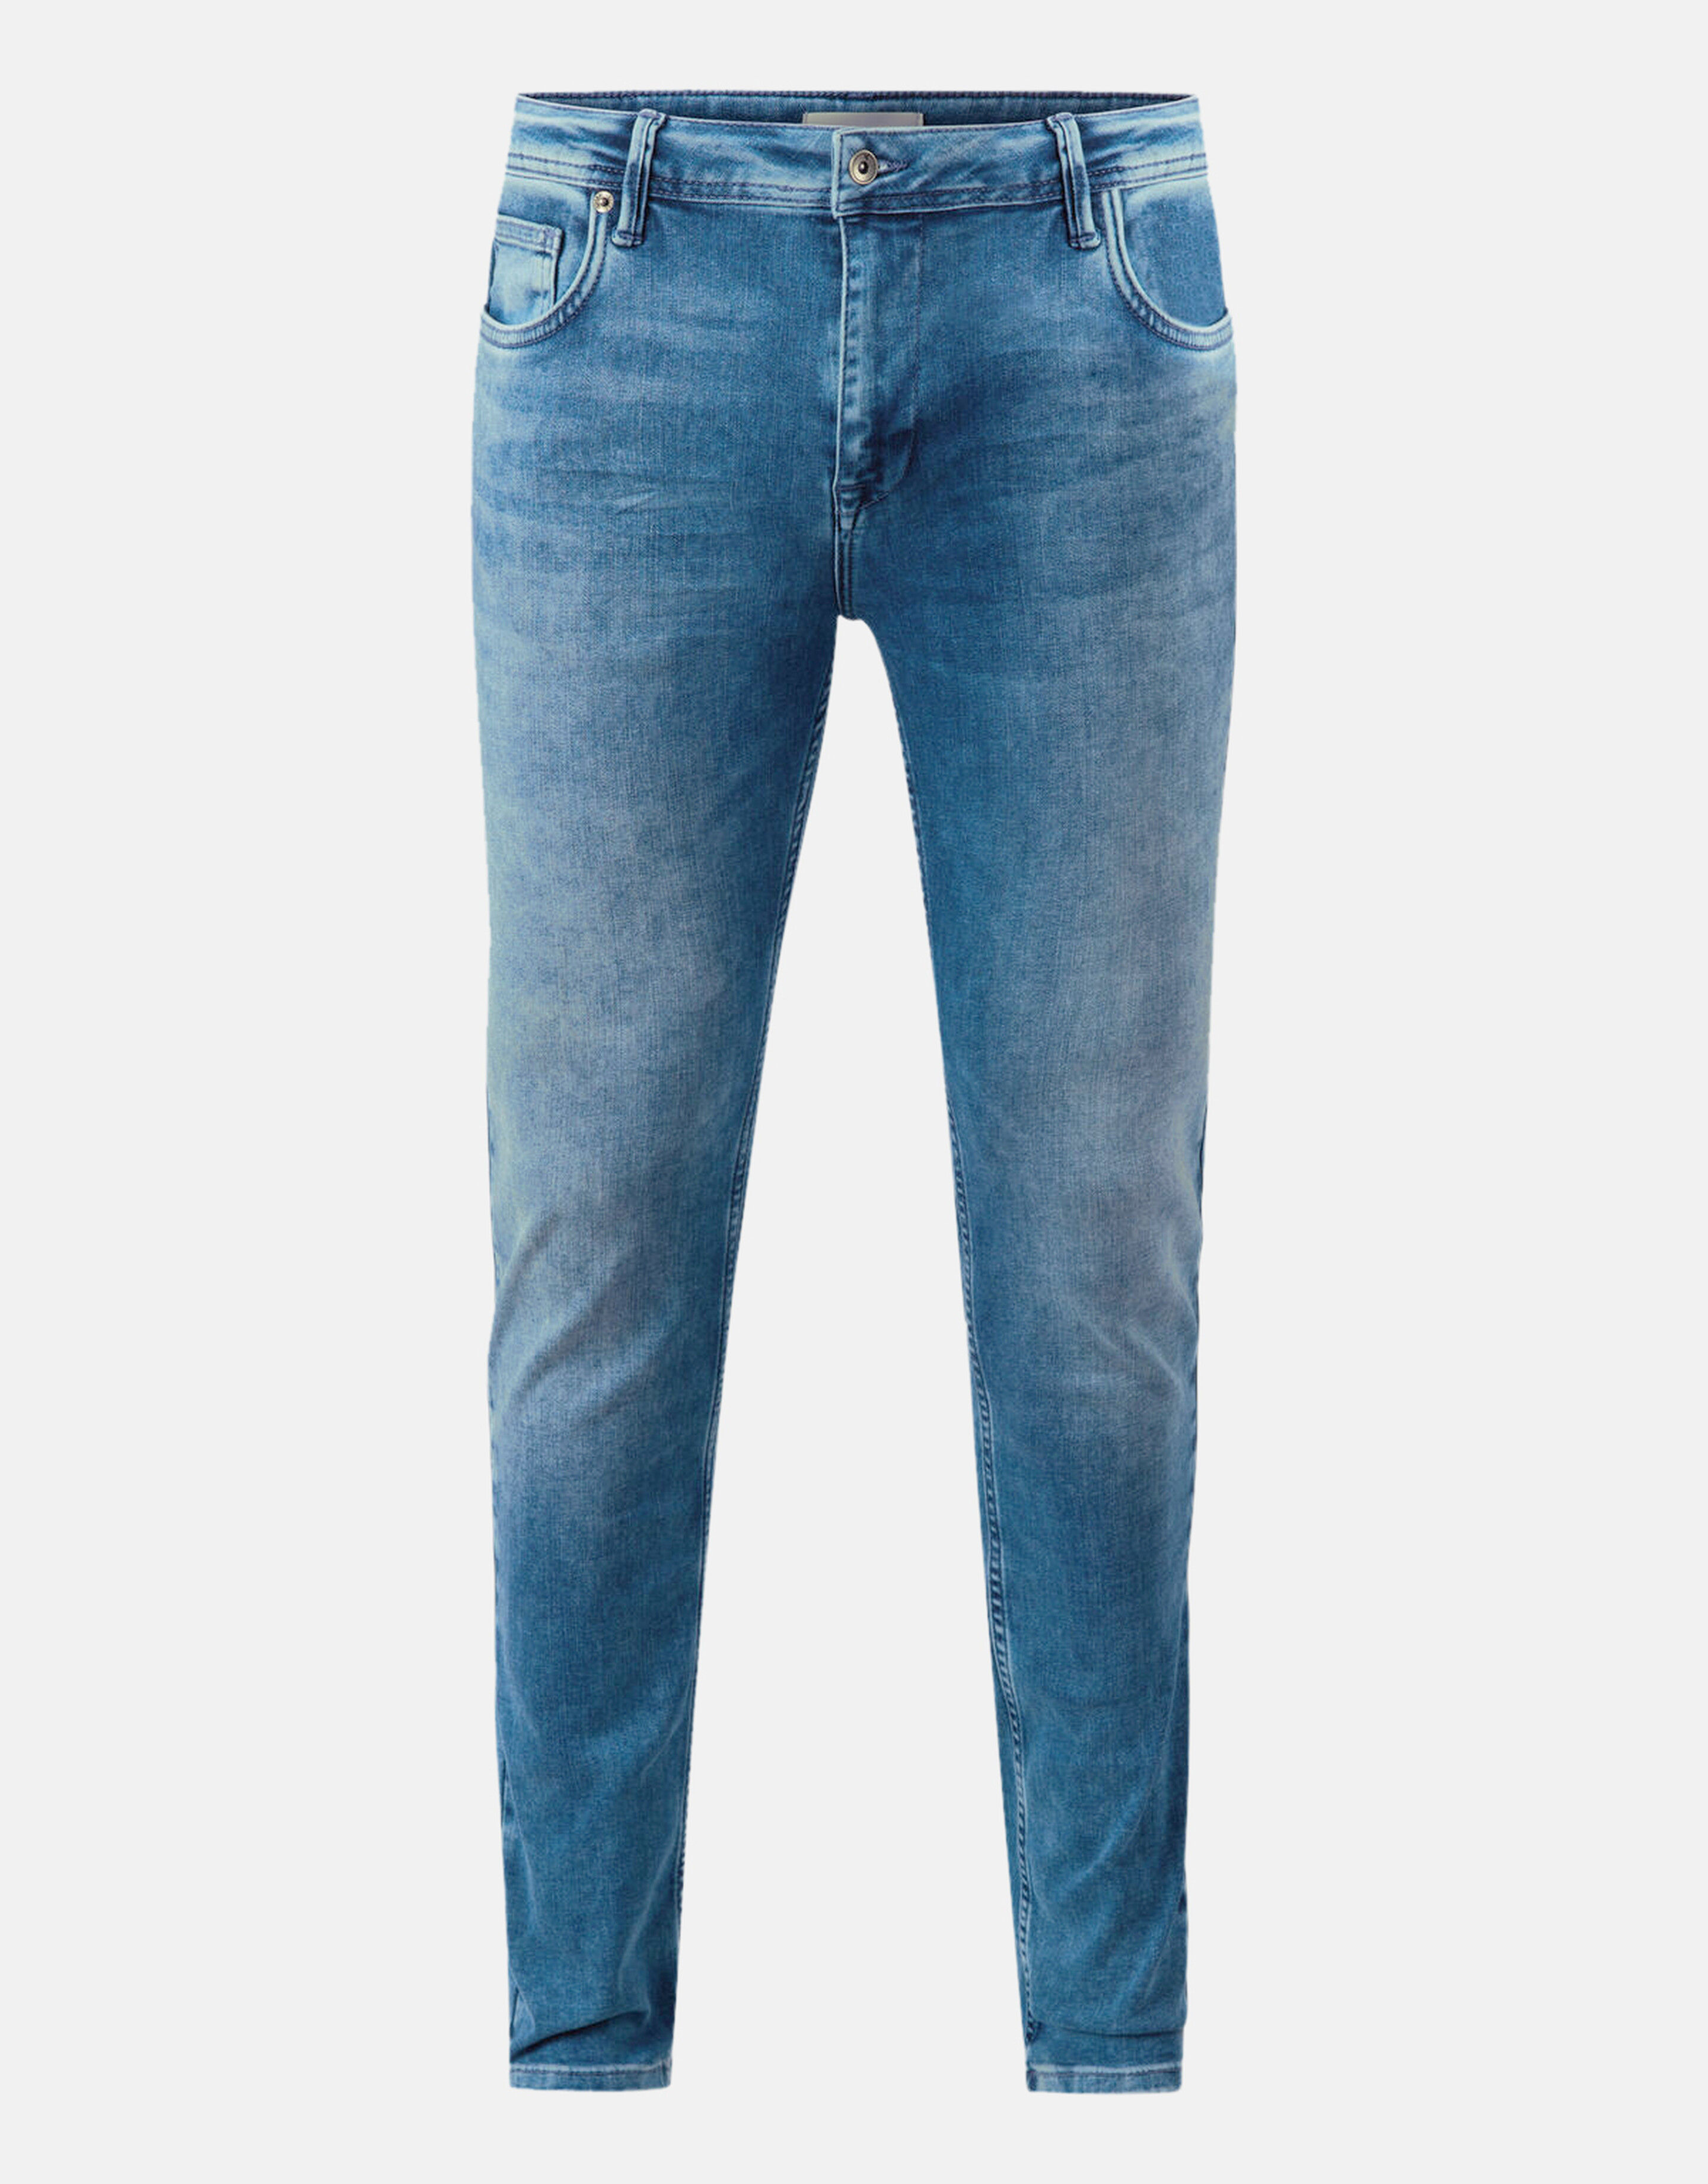 Slim Jeans Mediumstone L32 Refill